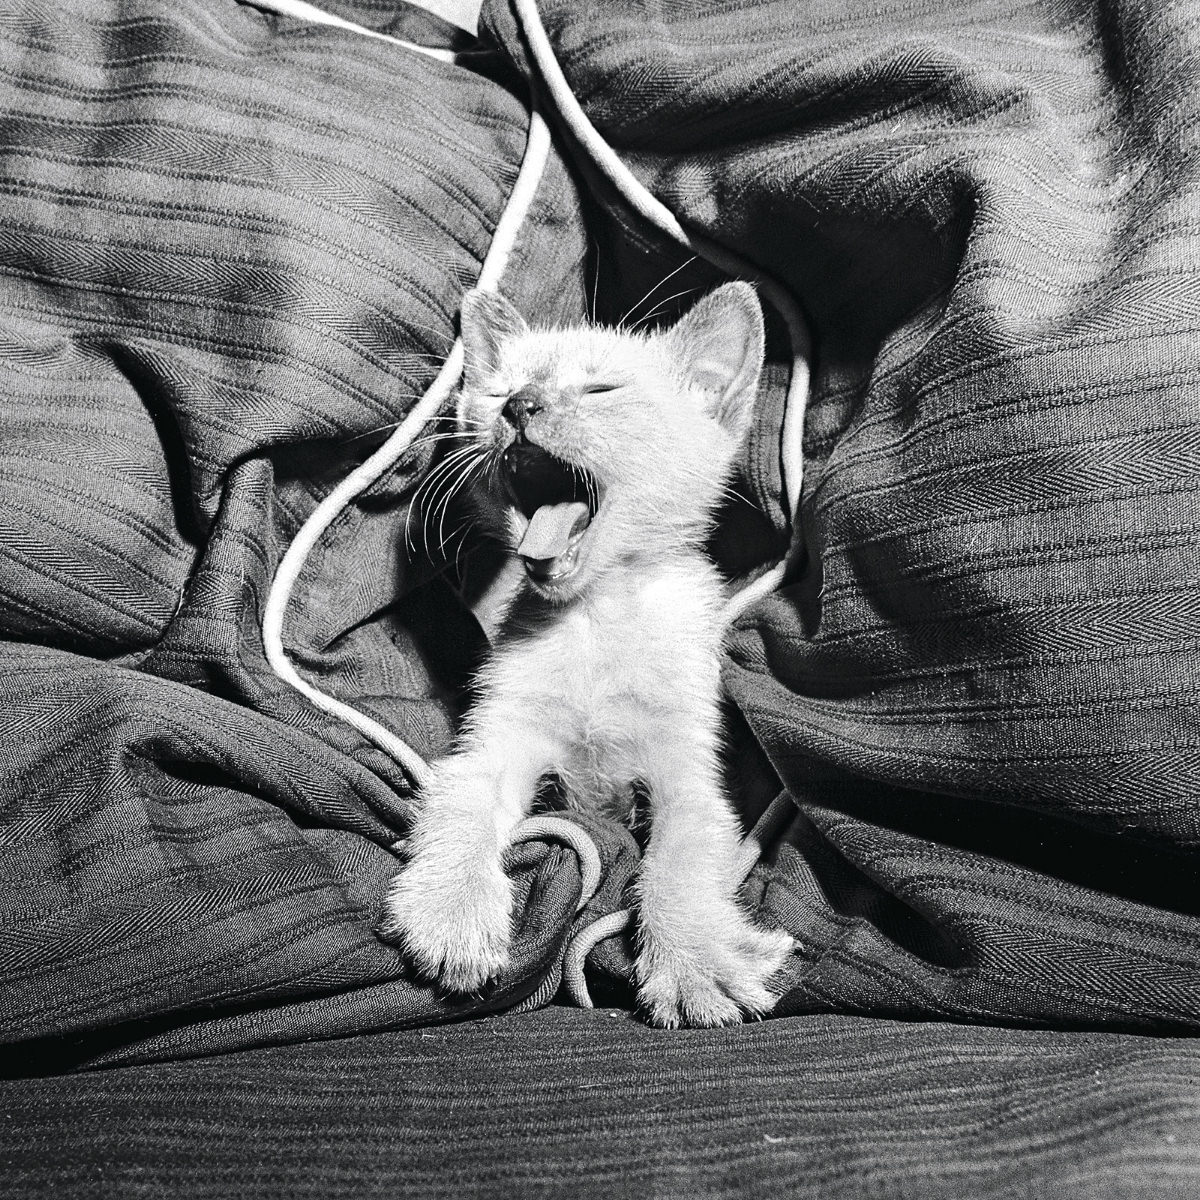 A Siamese cat yawns in 1950.